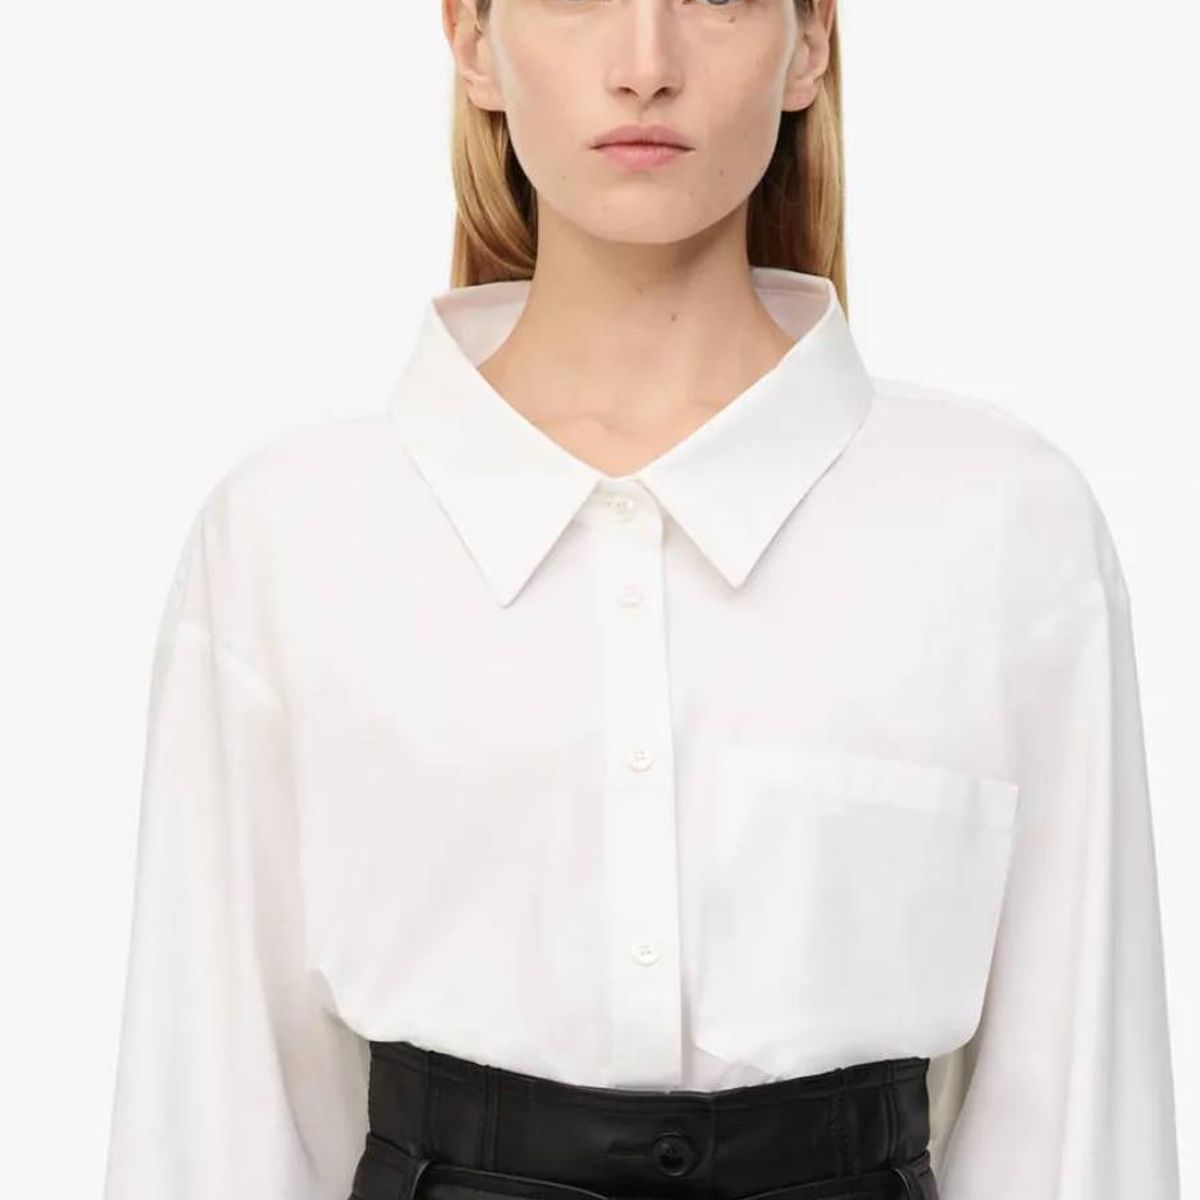 Camisa blanca y falda negra: Zara tiene el dúo elegante